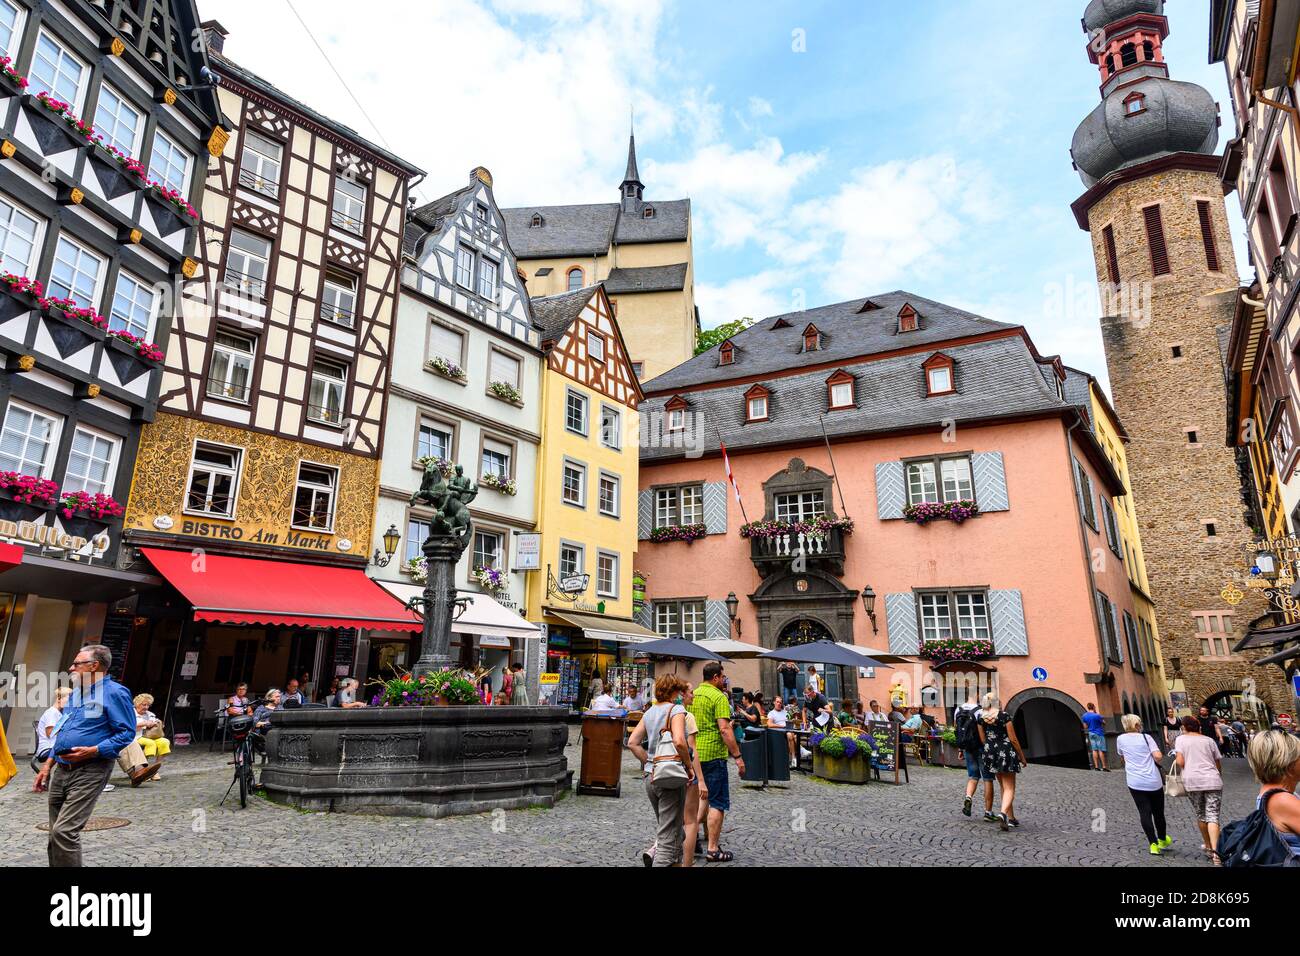 18 juillet 2020 : Cochem. Belle ville historique sur la romantique Moselle, la Moselle. Vue sur la ville, place du marché, église, maison à colombages, maisons. Rhinel Banque D'Images